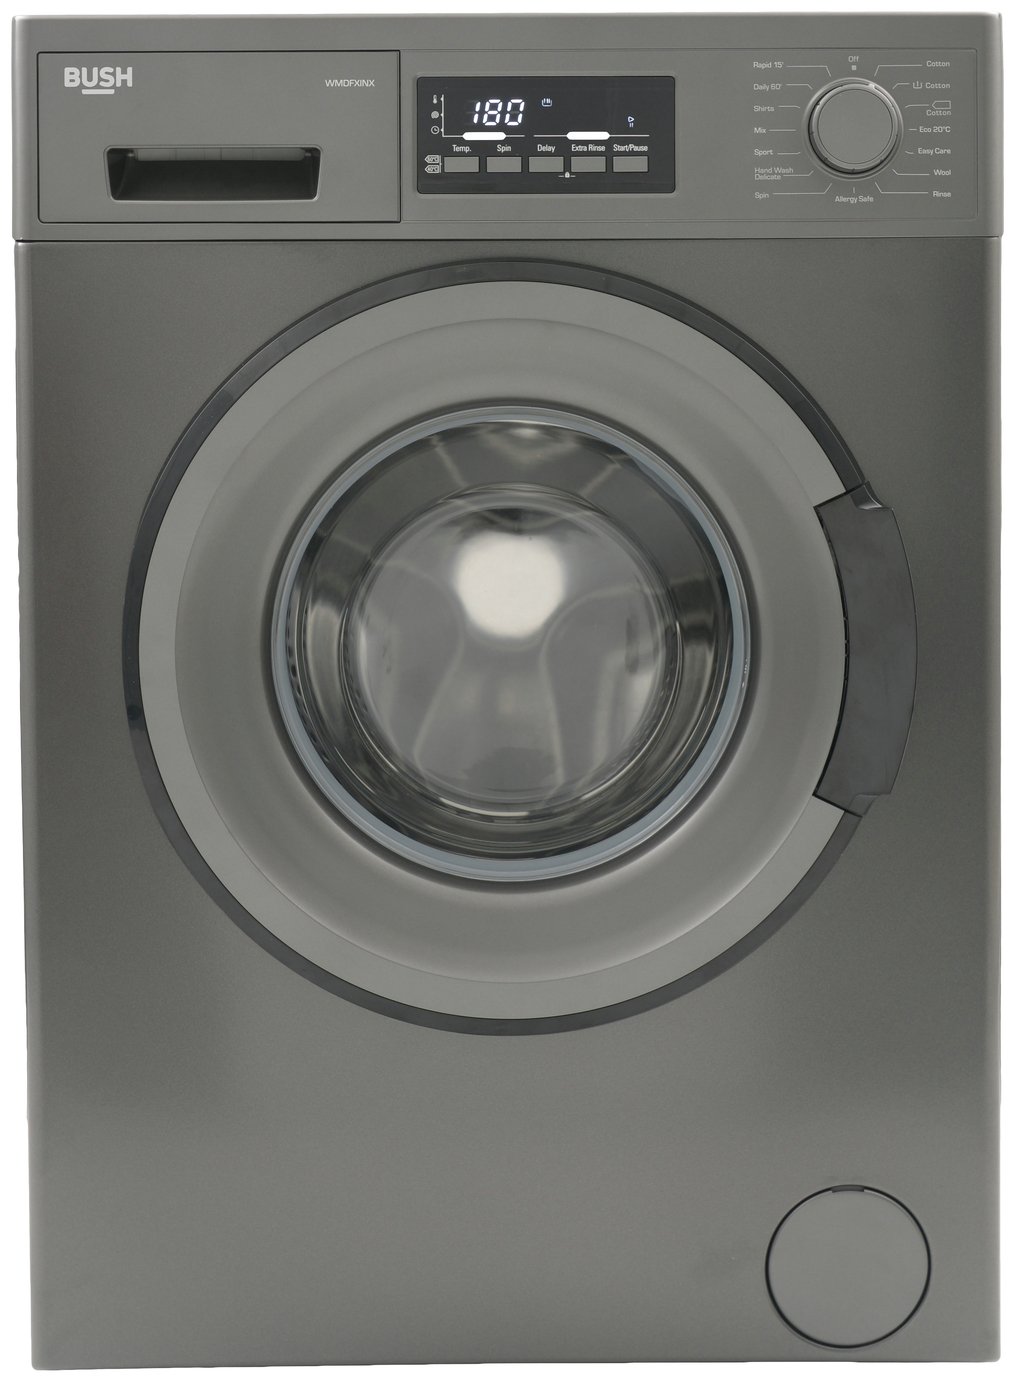 Bush WMDFXINX 8KG 1400 Washing Machine - Dark Inox